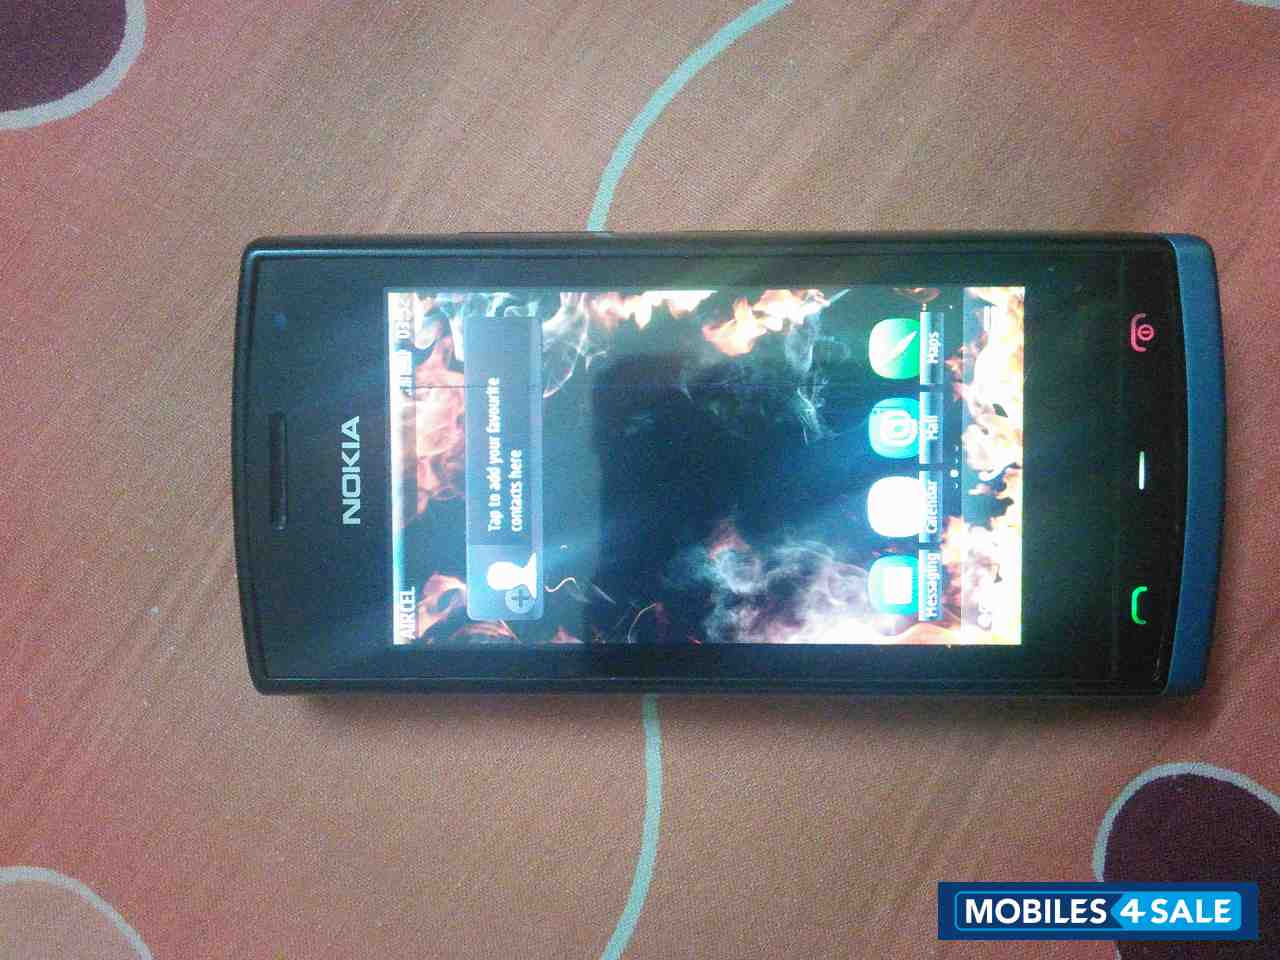 Black Nokia 500